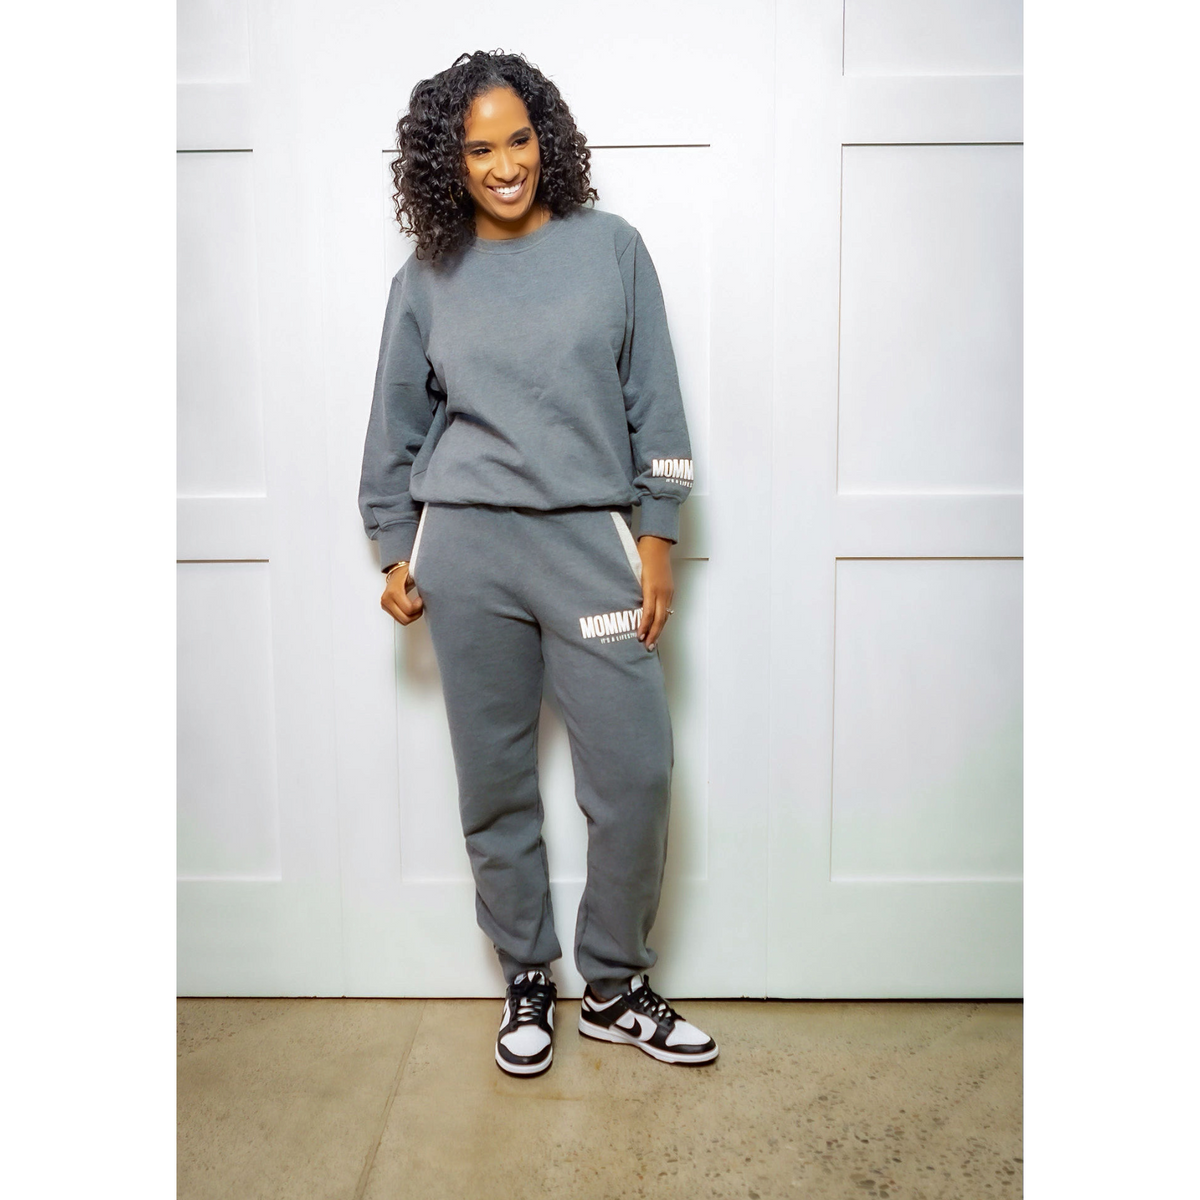 Mommyin Lifestyle Fleece Sweatsuit - Cool Grey